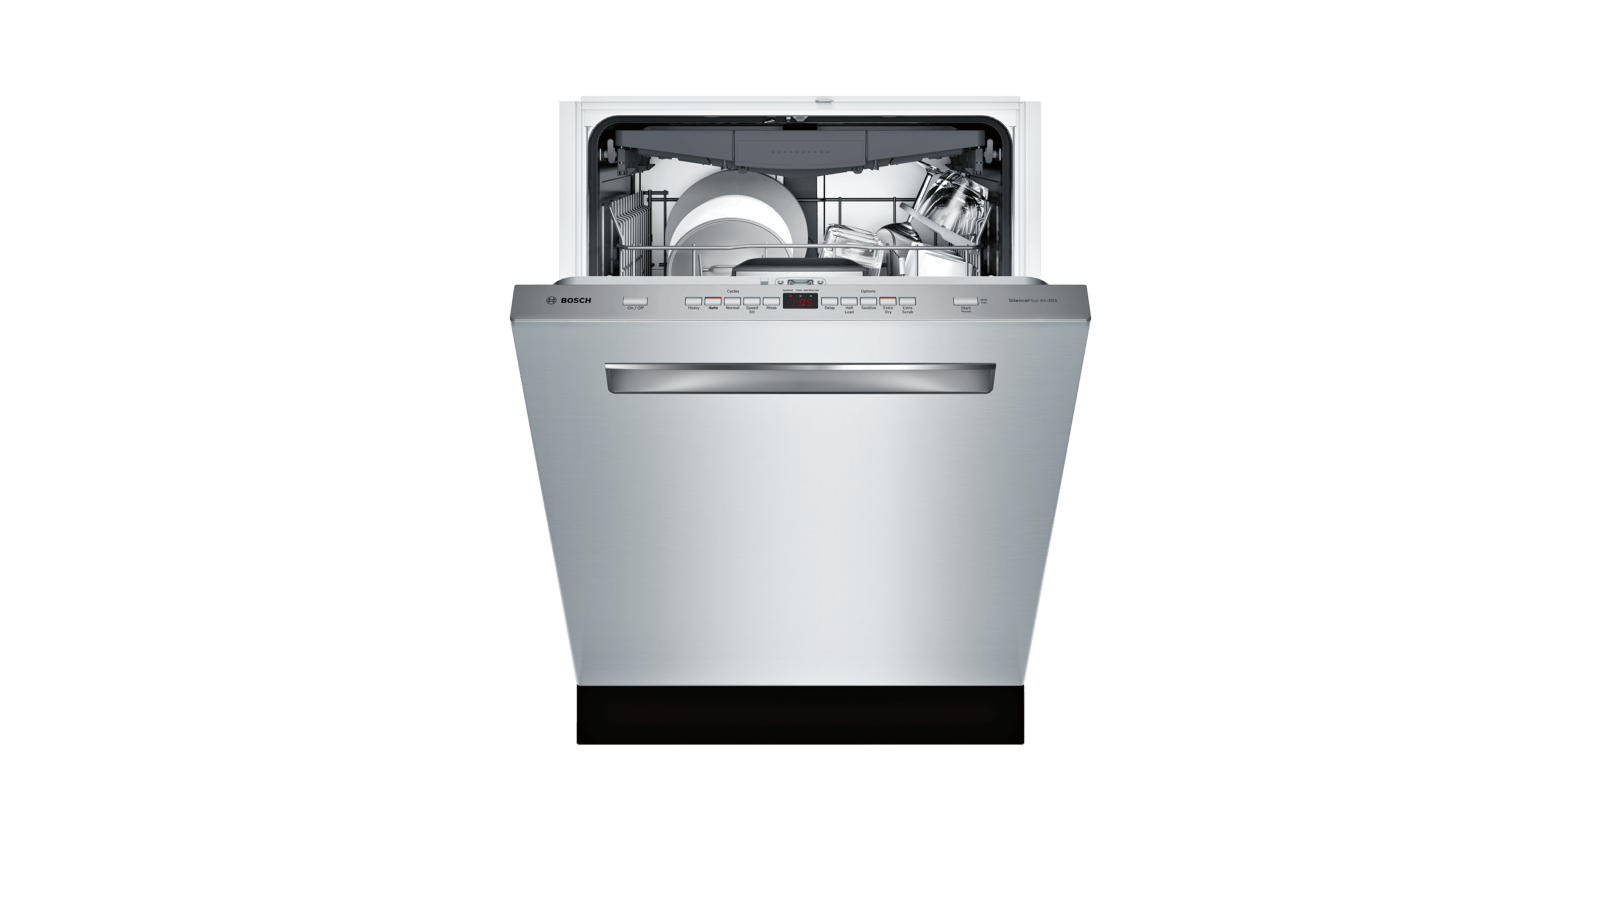 bosch manual dishwasher